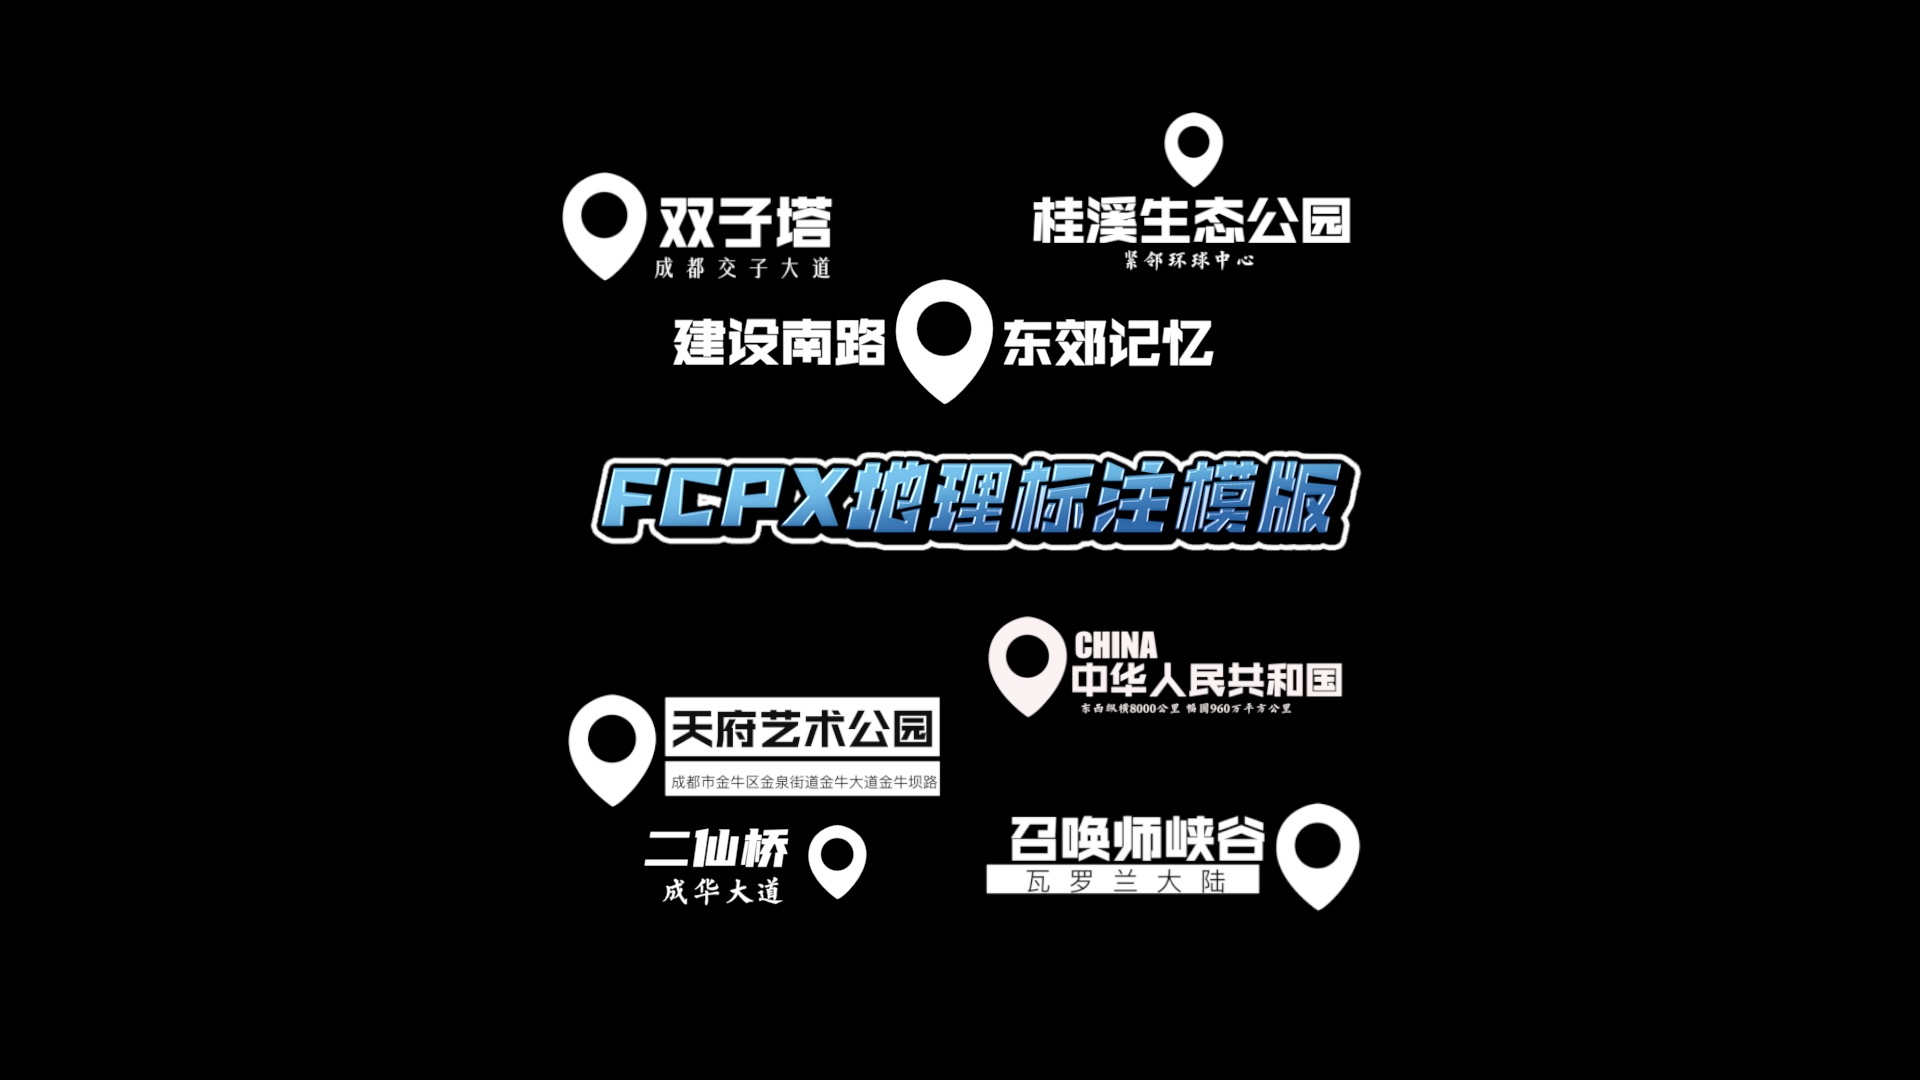 FCPX10.6 地理位置标注字幕模版